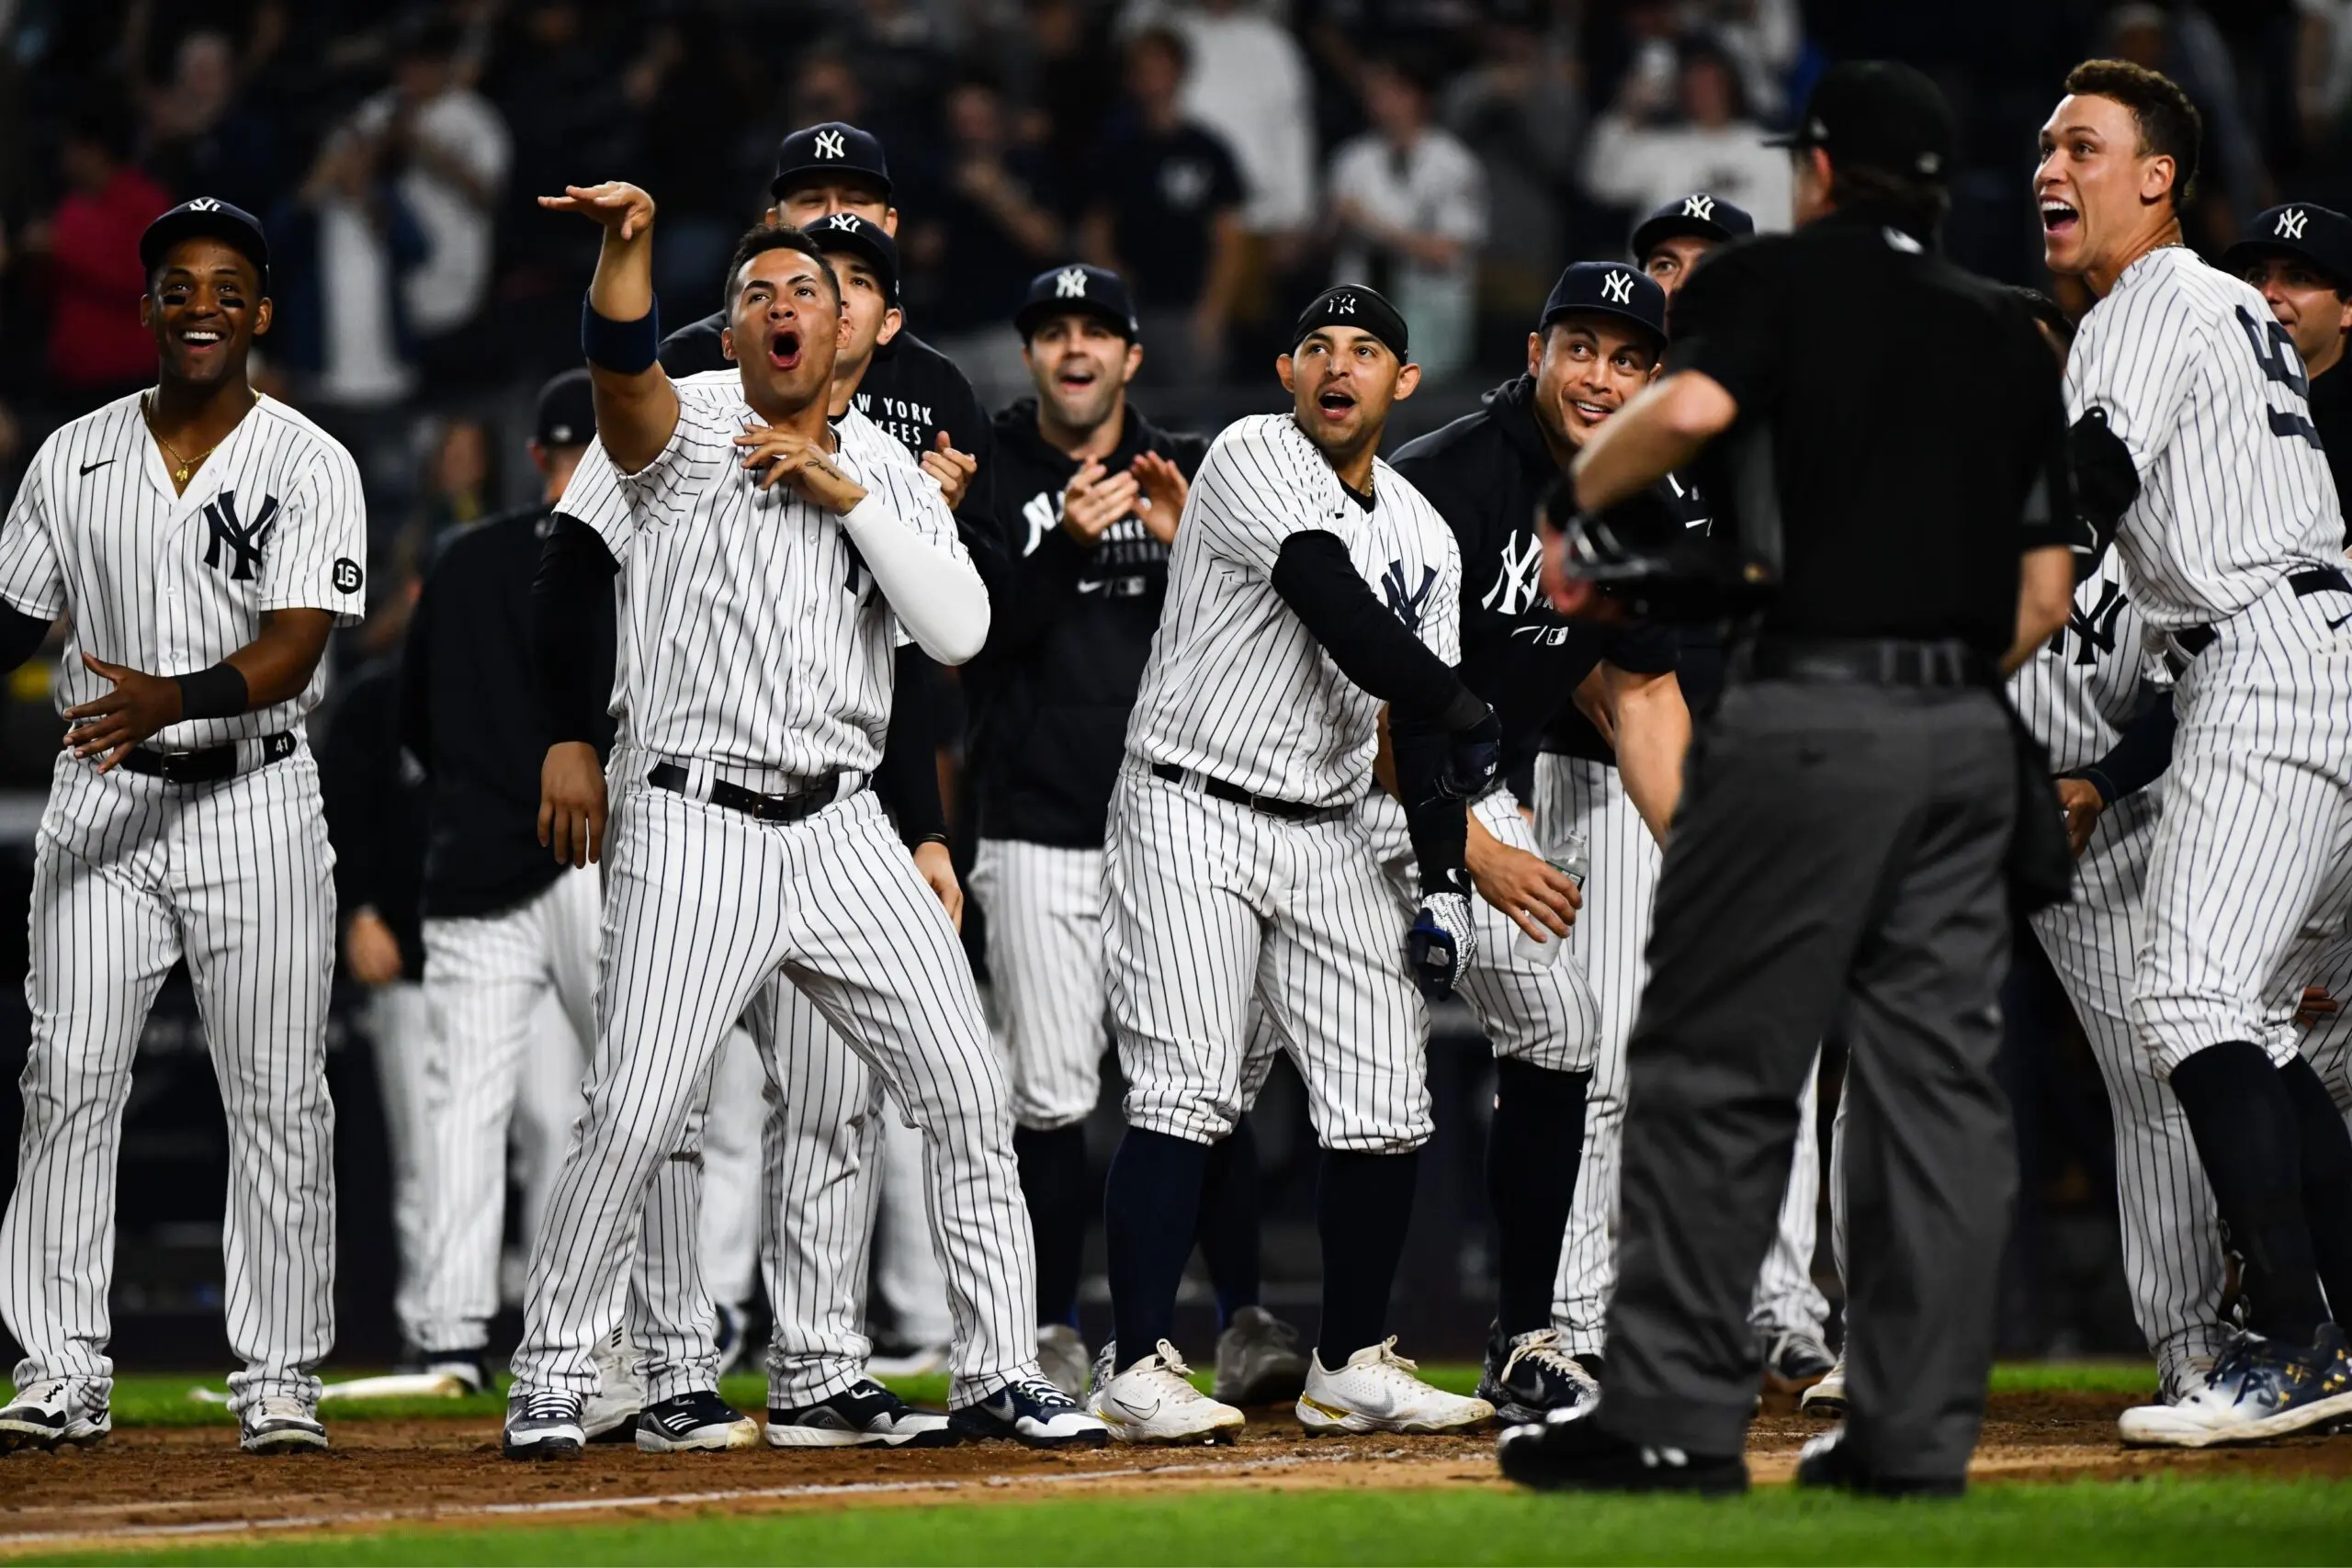 Yankees vencem Rays com walk-off home run de Frazier nas entradas extras